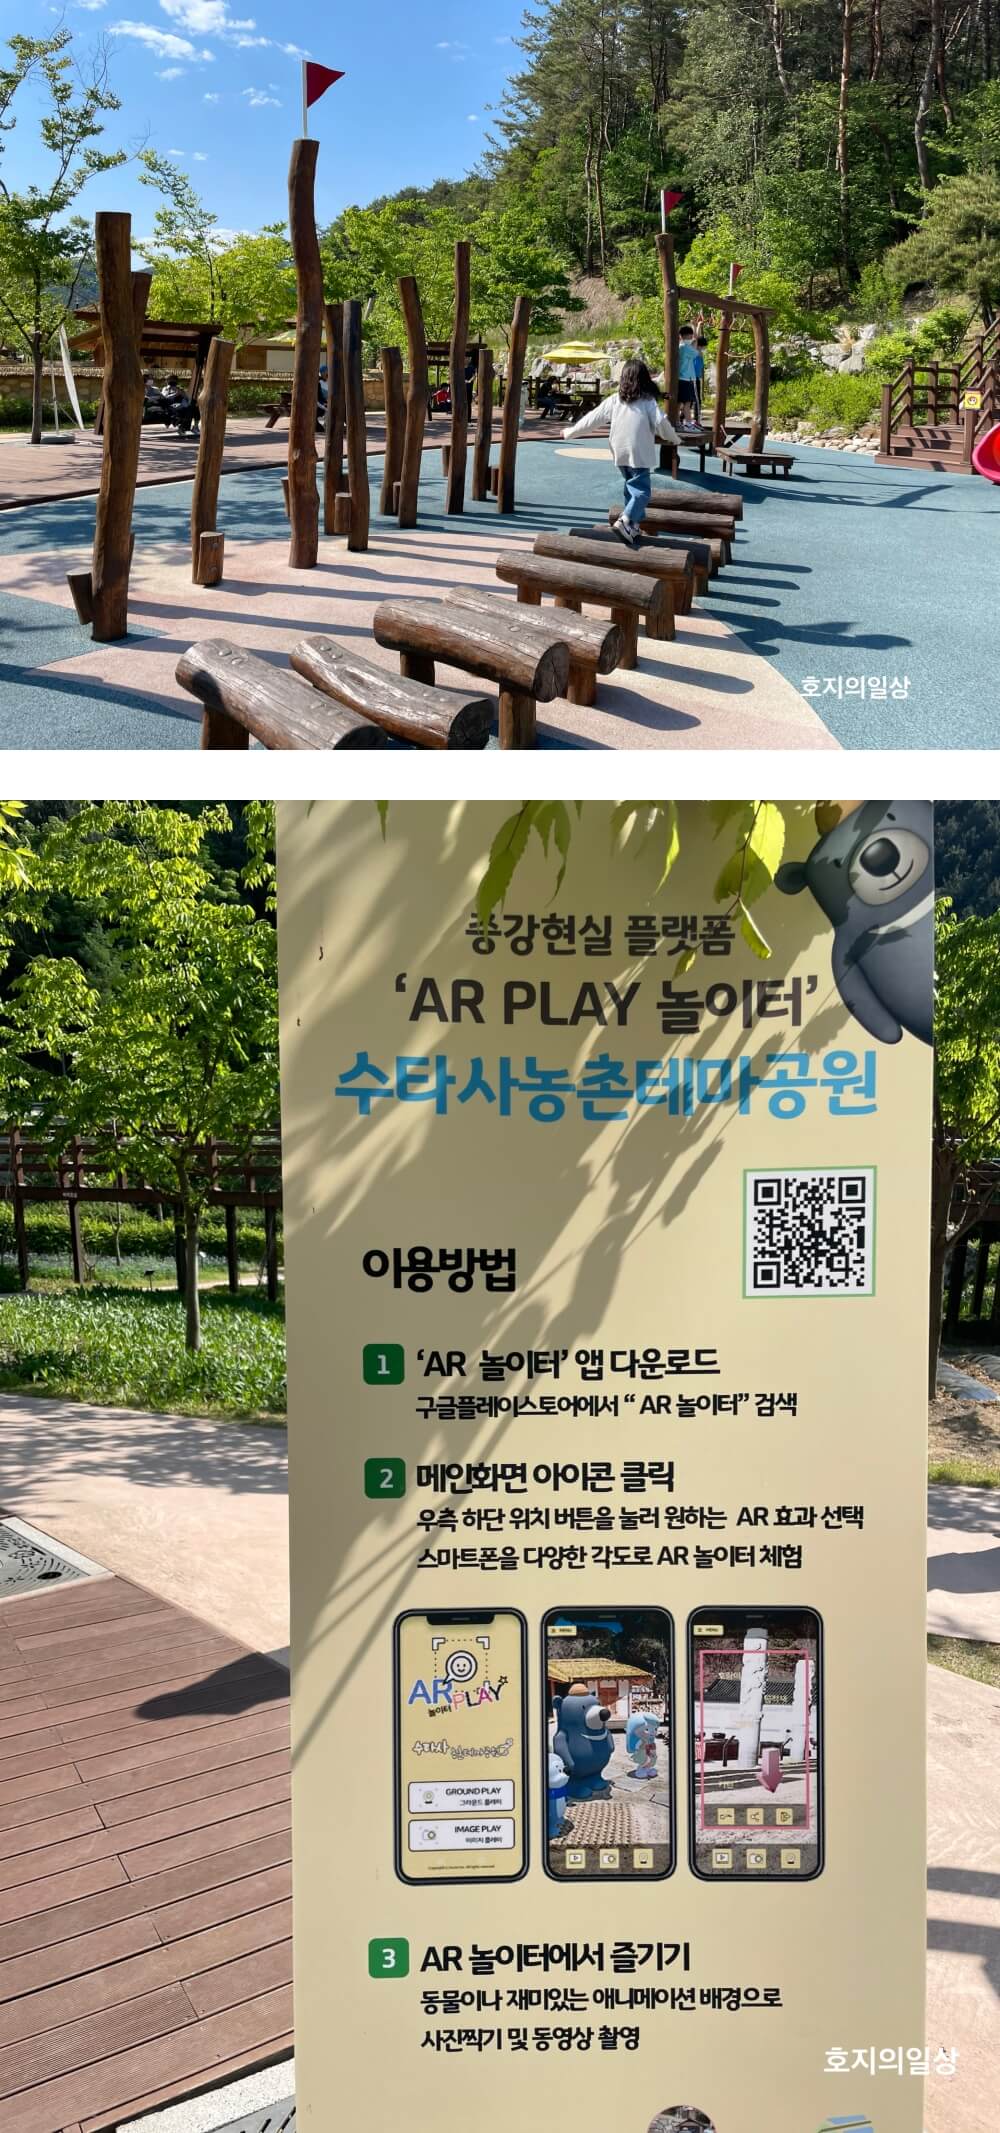 홍천 수타사 농촌테마공원 - AR 놀이터 엡 이용방법